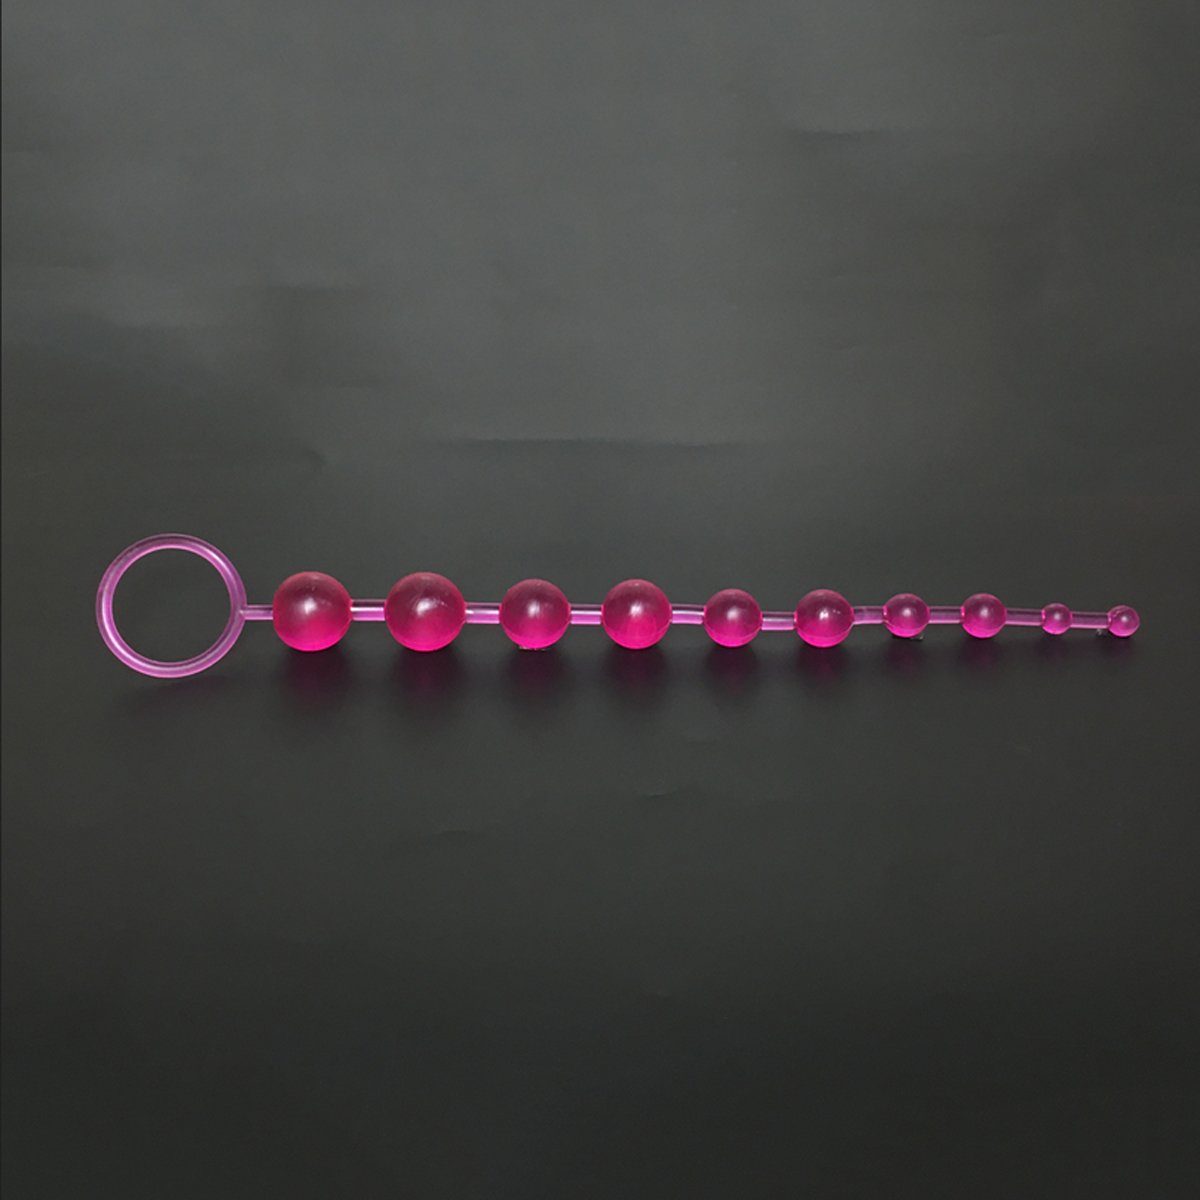 TPFSecret Analkette für Männer und Frauen, ergonomische große 29,5cm Anal Kette, mit 10 Perlen, und unterschiedlichem Durchmesser - Farbe: Lila